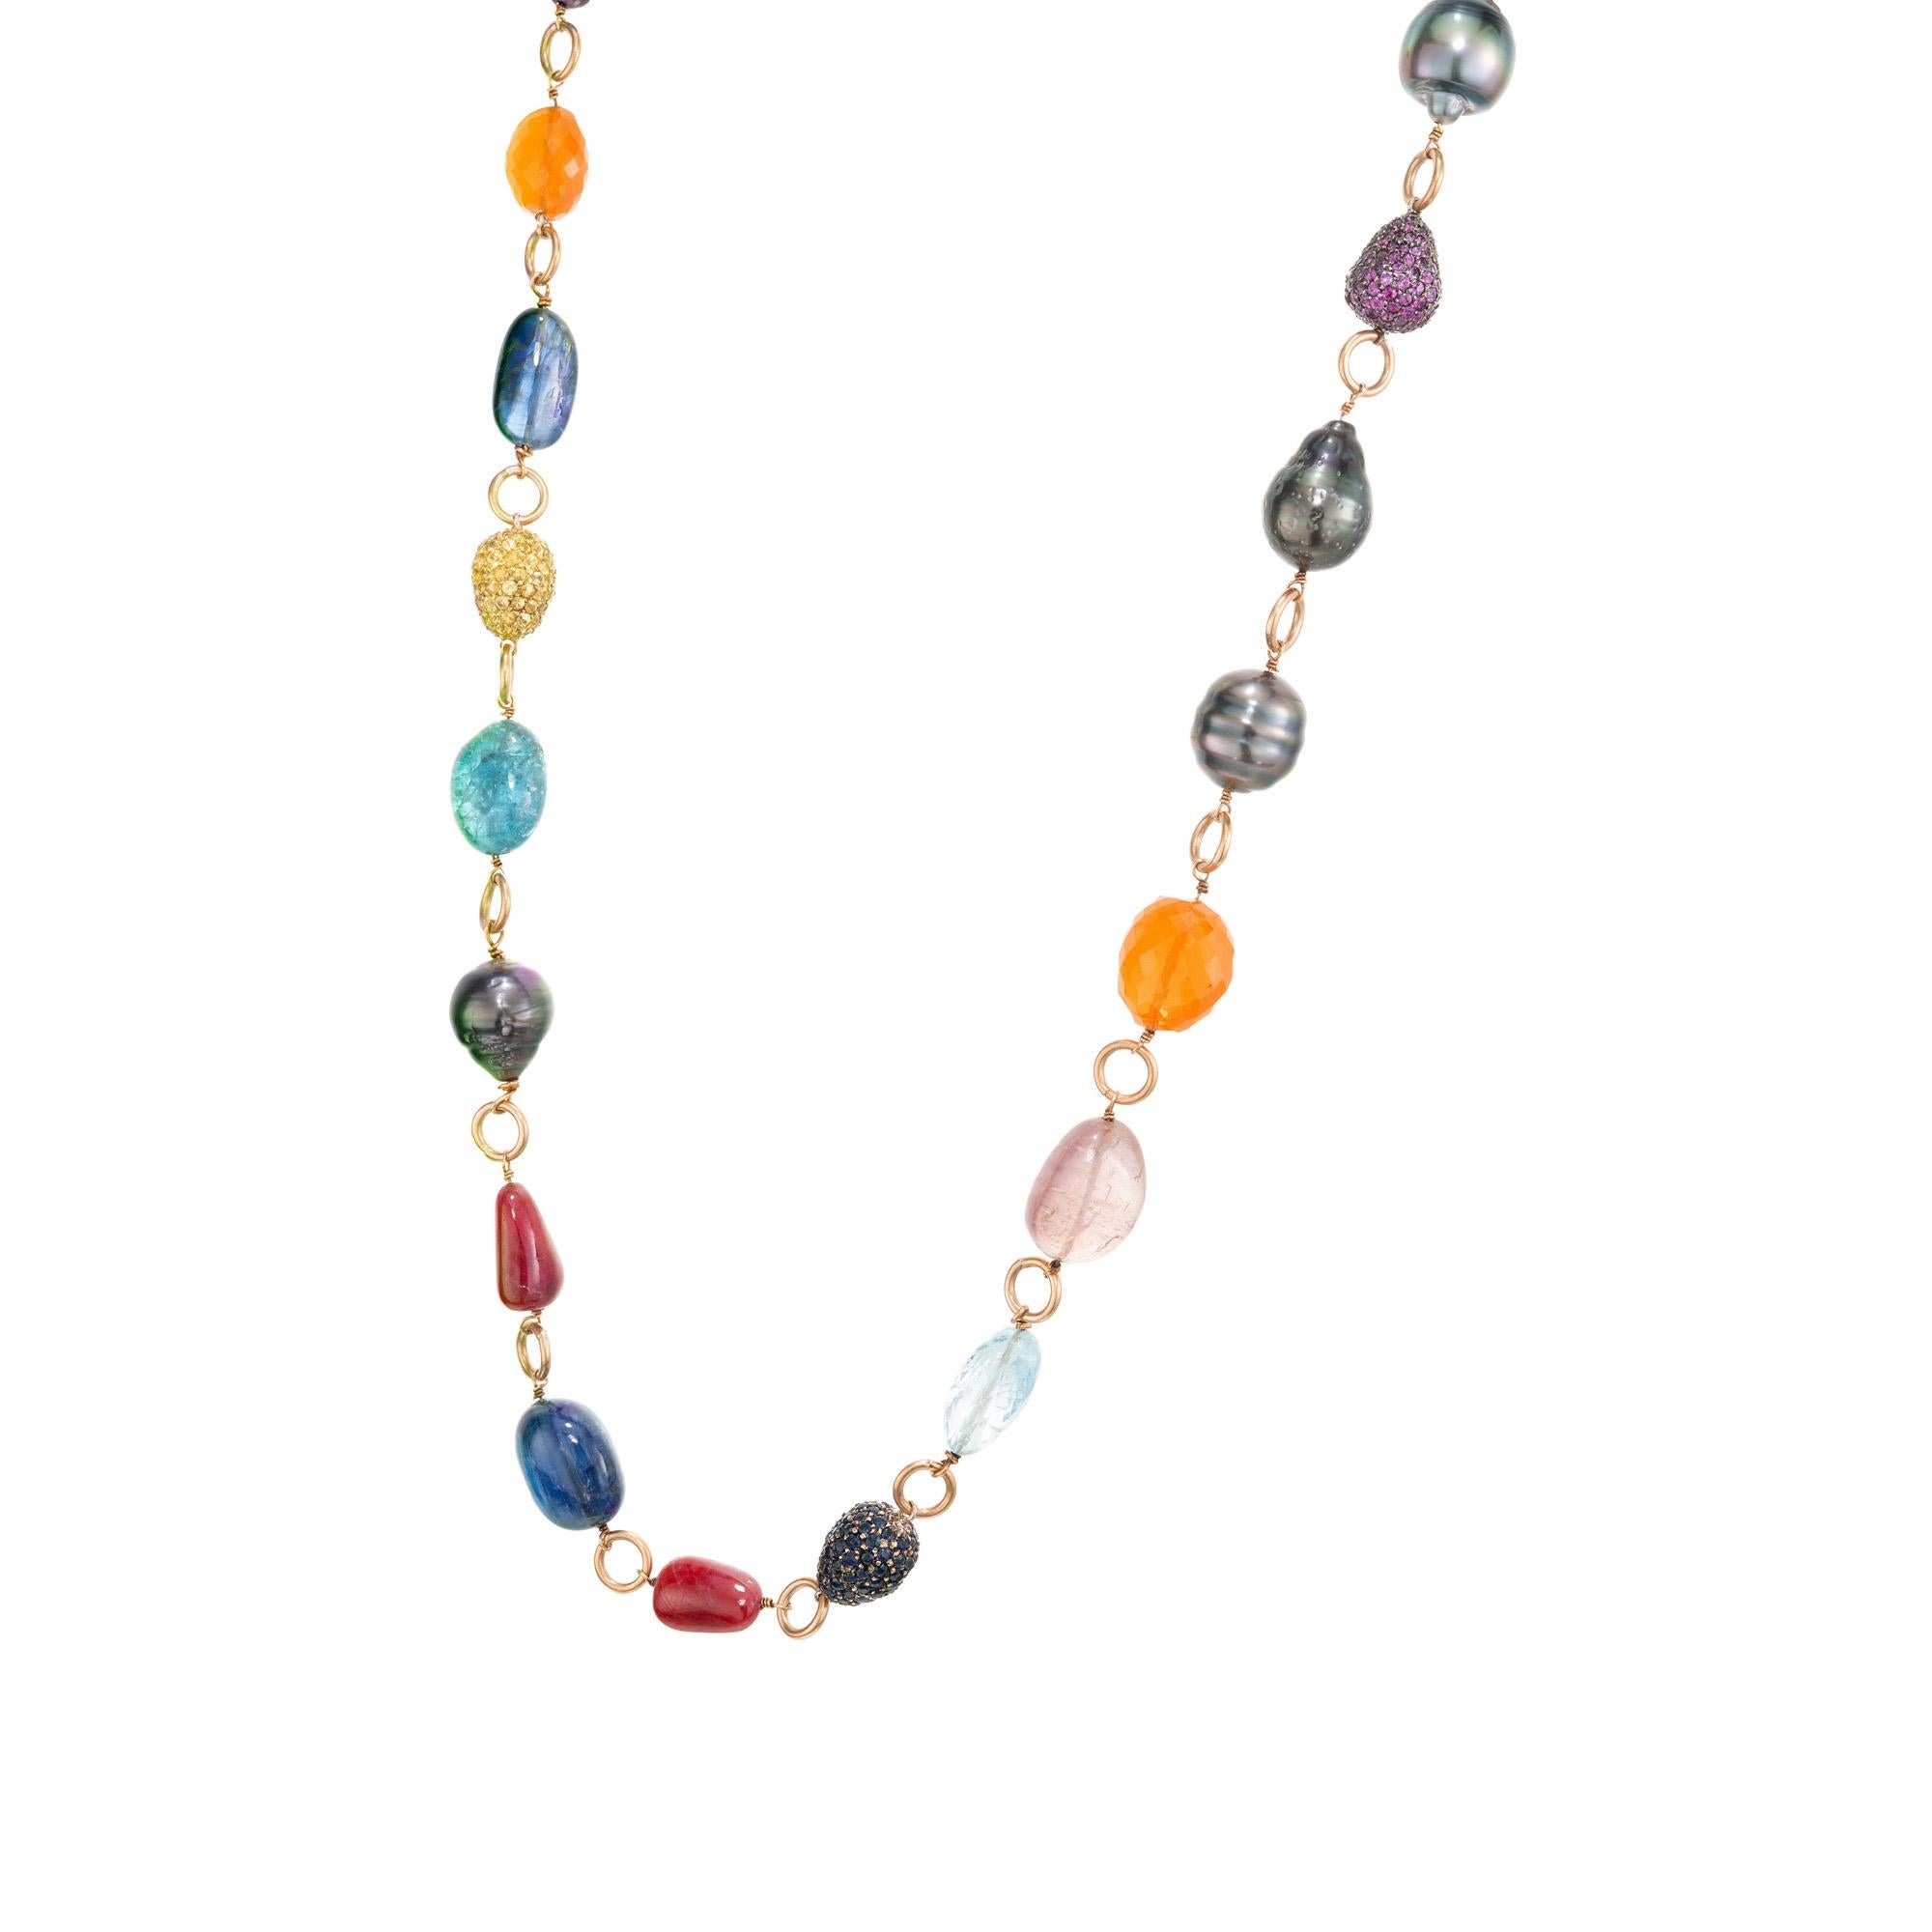 Handgefertigte Designer-Halskette von FJU aus 18 Karat Gelbgold. Abwechselnd getrommelte echte Steinperlen in hellen Farben, schwarze Perlen, naturfarbene Südseeperlen und mit Edelsteinen besetzte Perlen. Von der weiblichen Seite des Fangs. Grüner